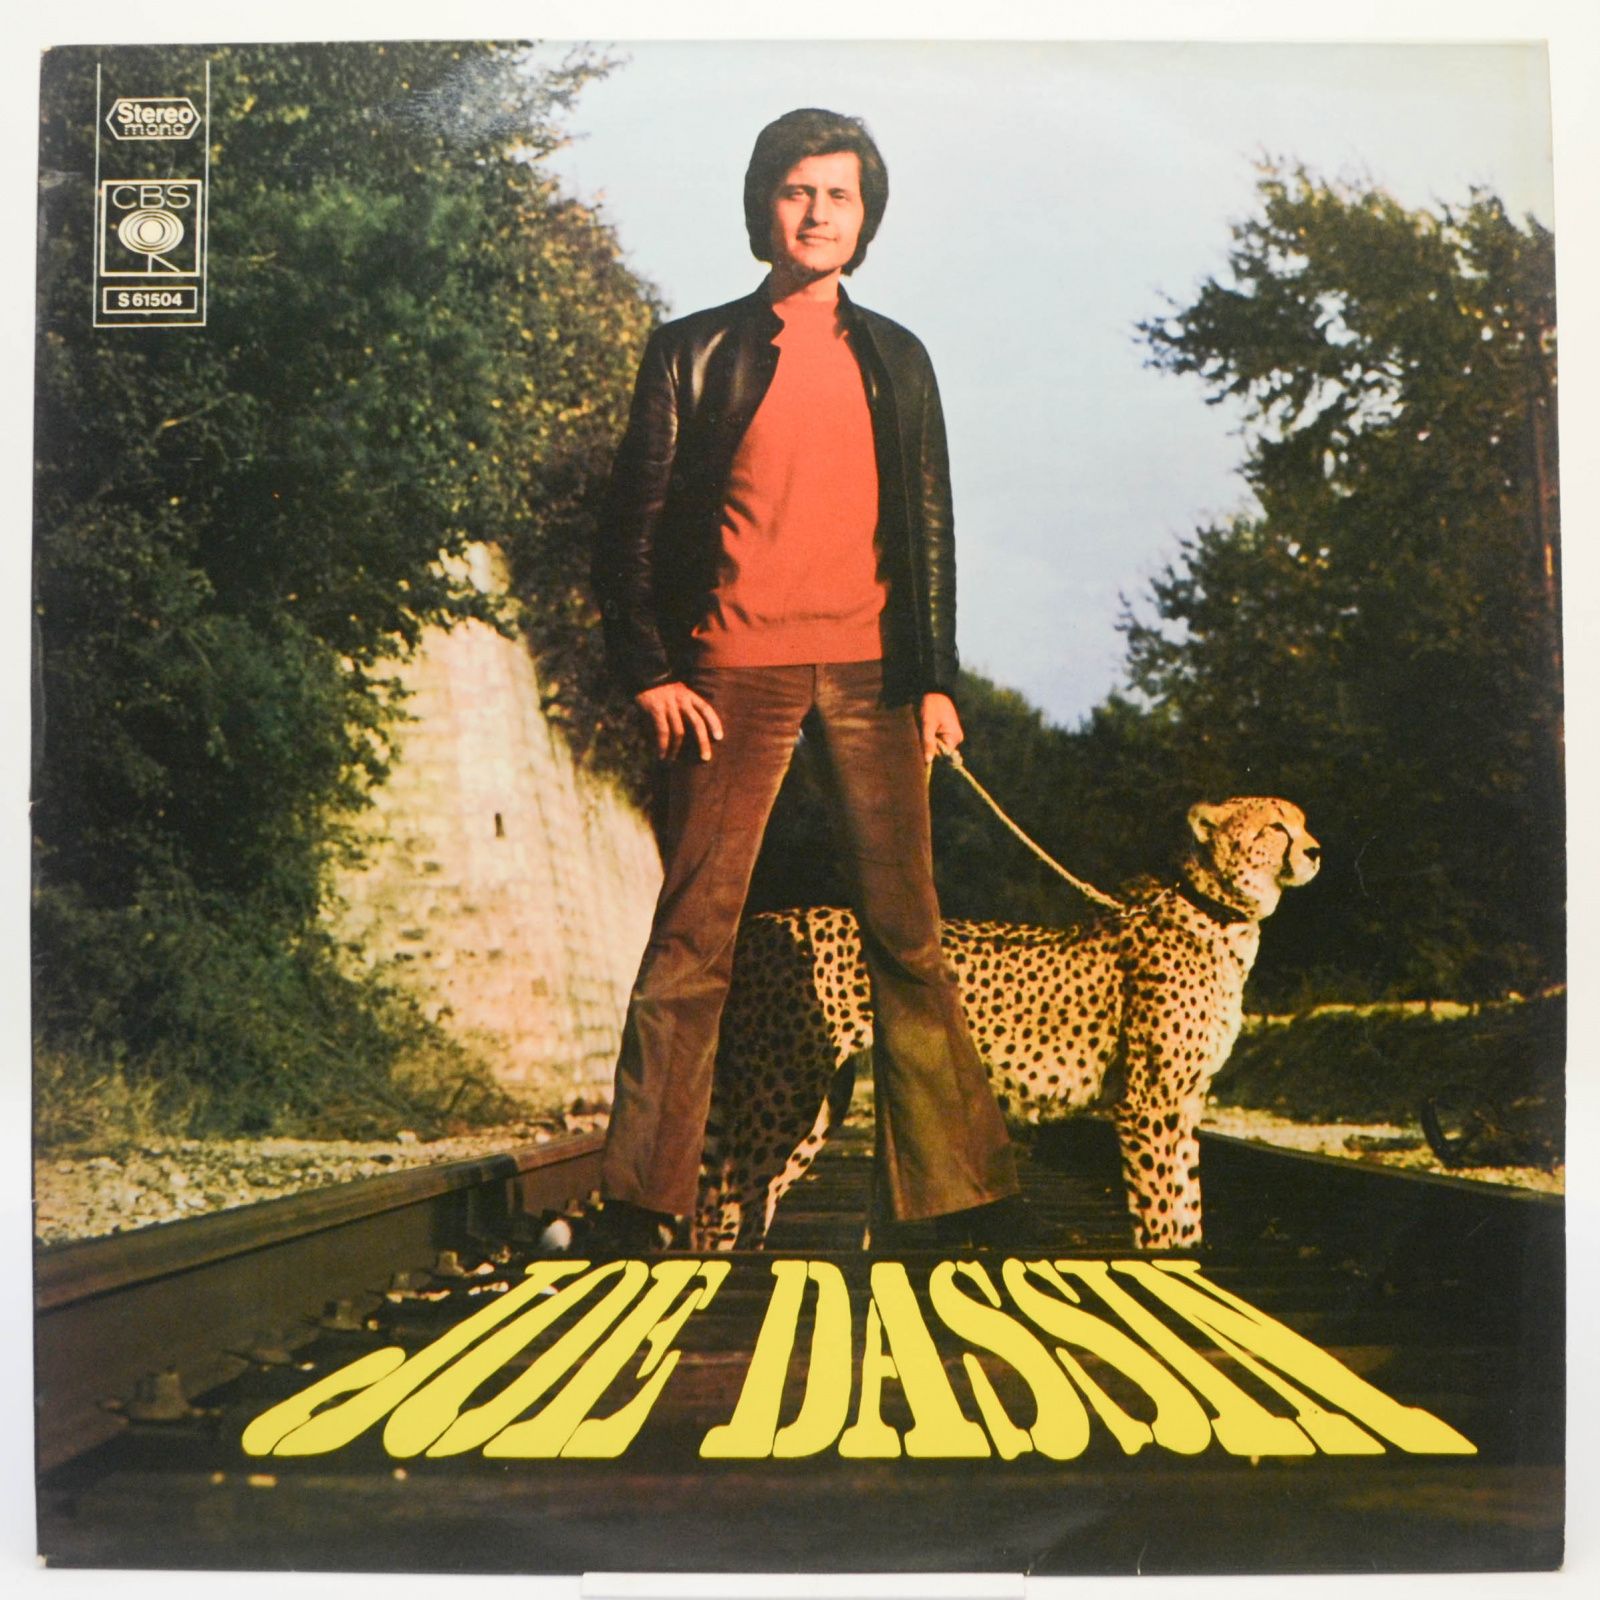 Joe Dassin — Joe Dassin, 1970